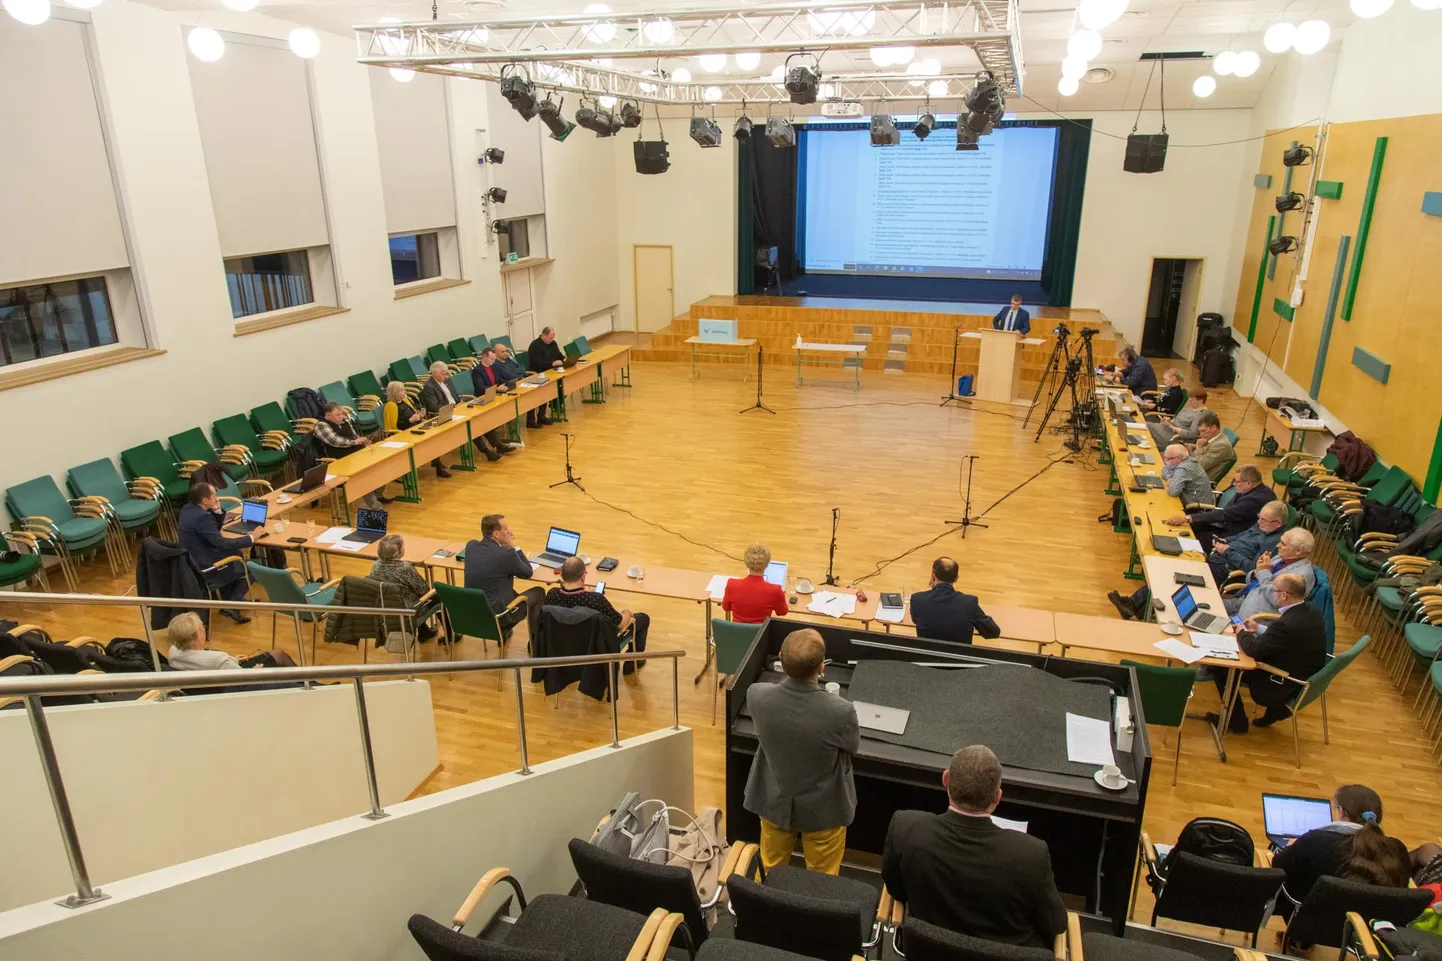 Põhja-Sakala volikogu istungil saab poliitik osaleda ka veebi vahendusel, aga salajasel hääletusel ta valida ei saa.